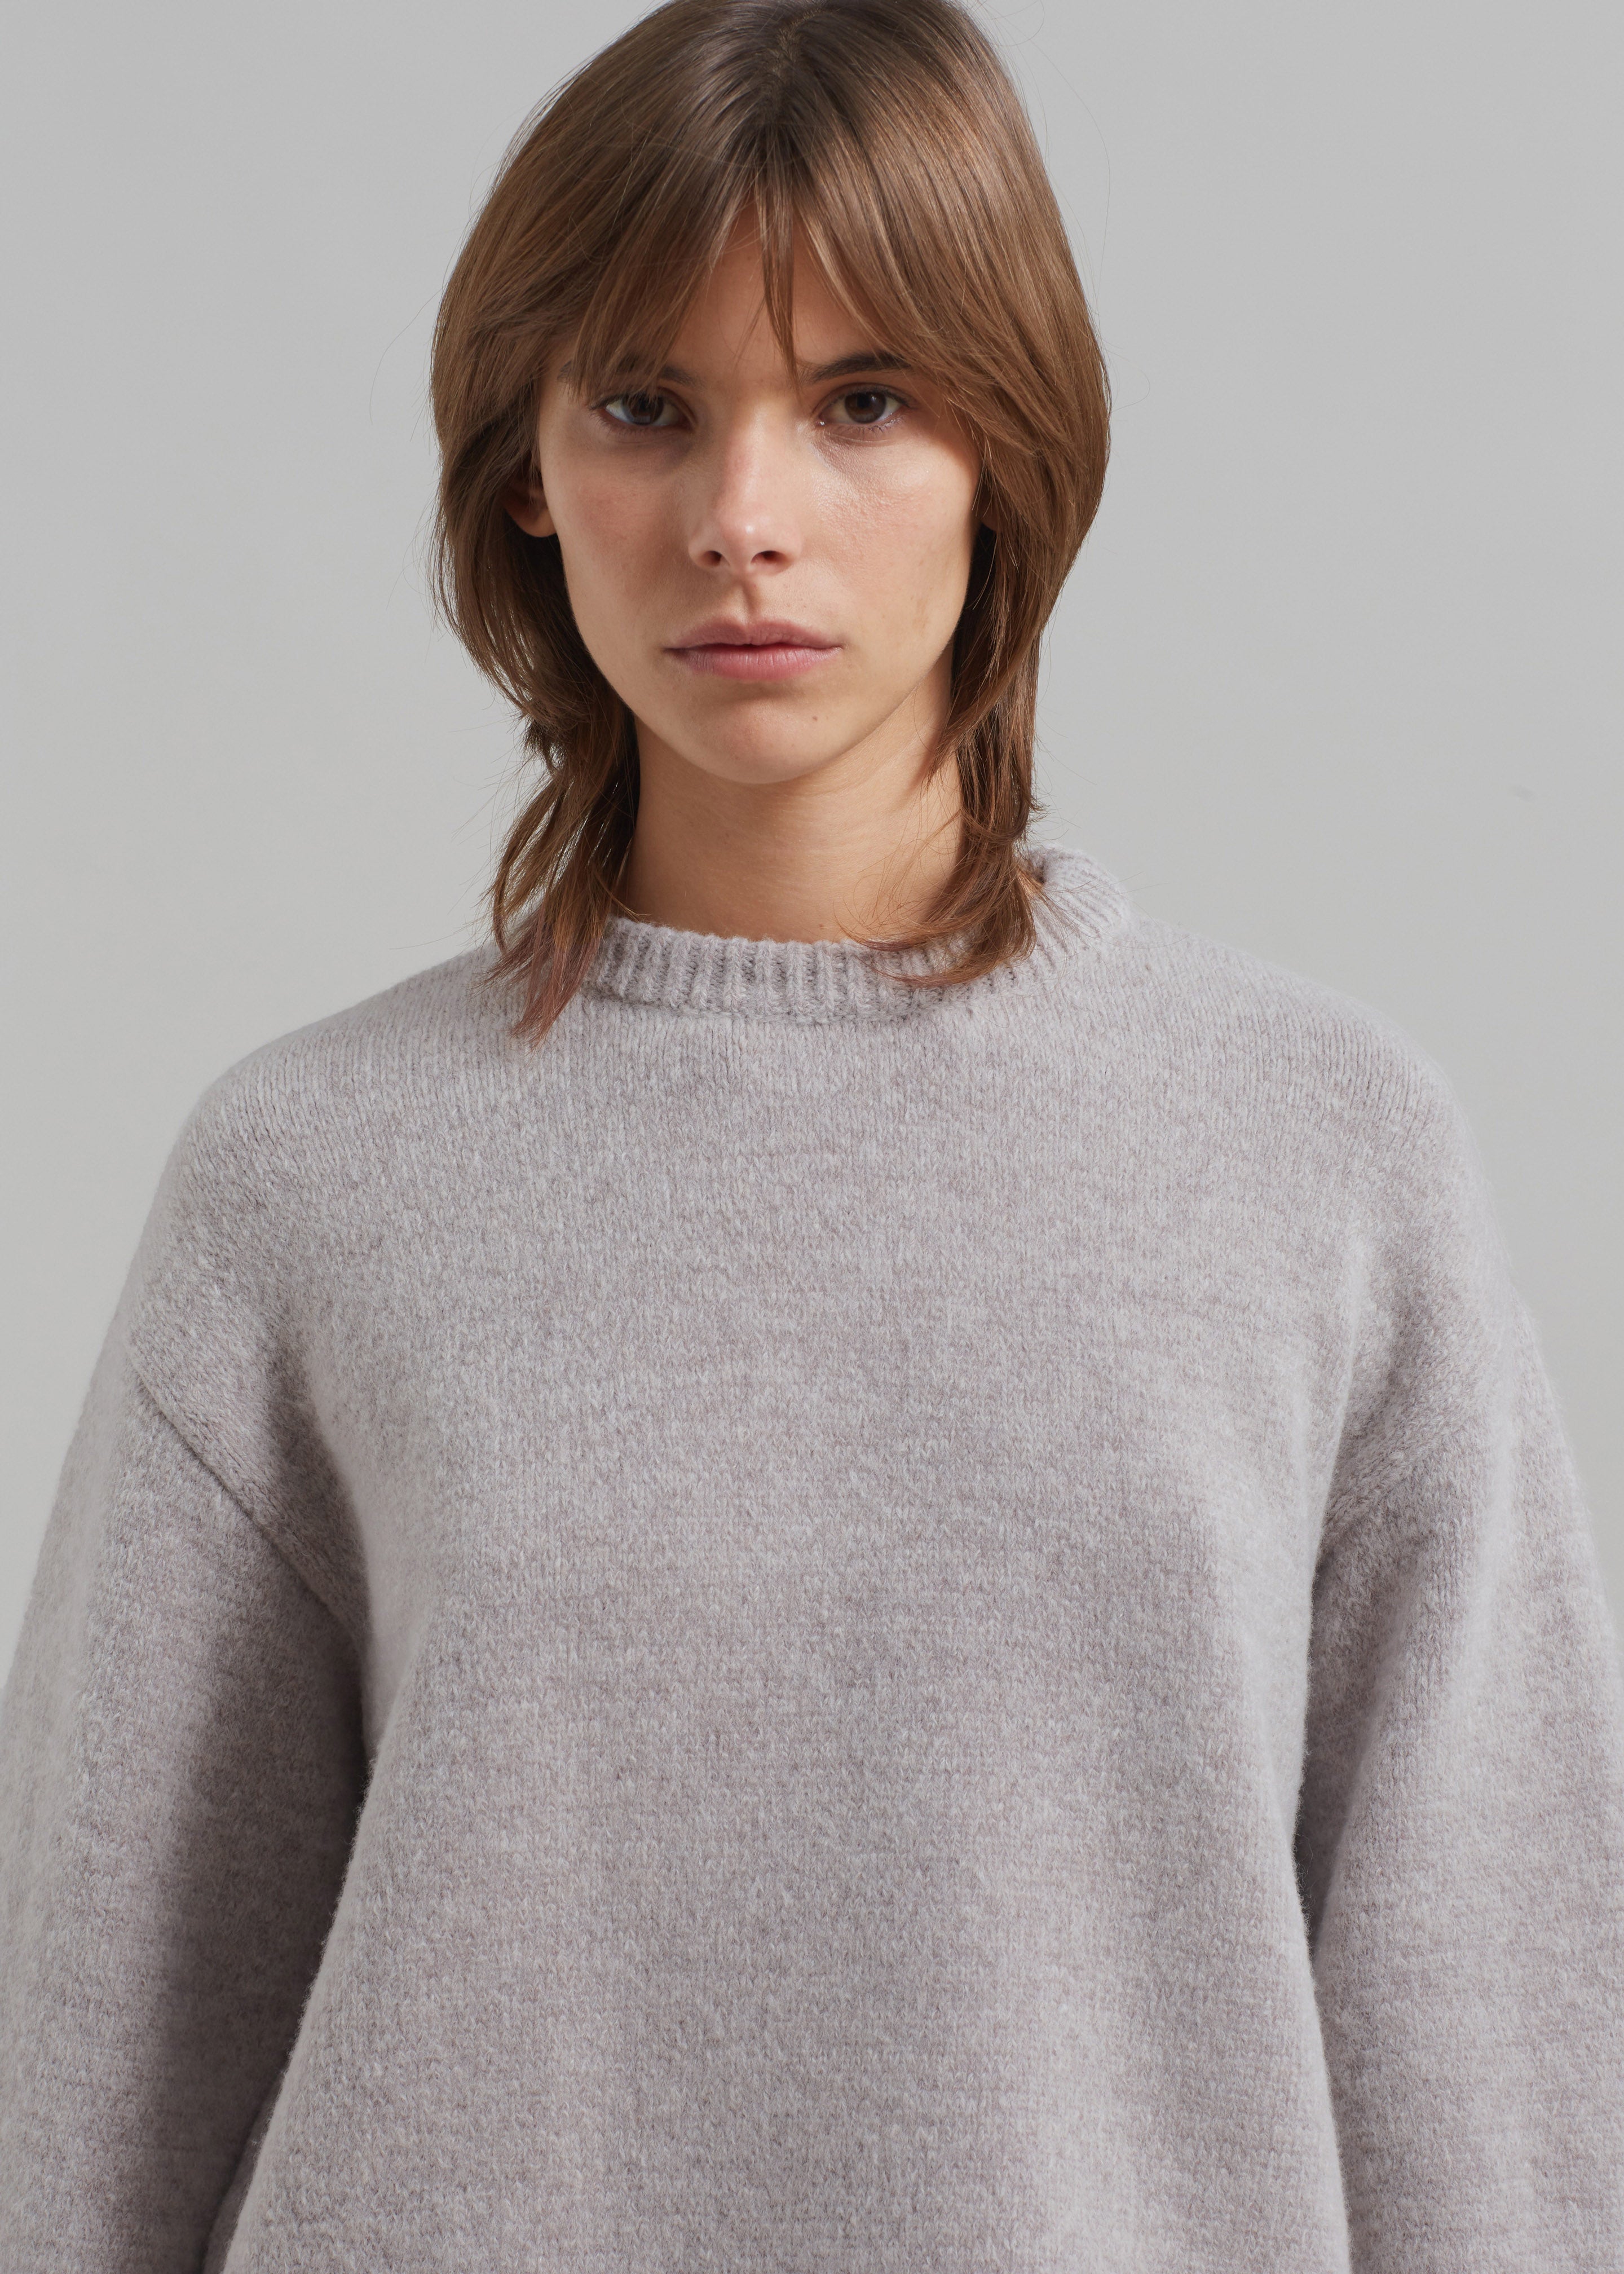 Proenza Schouler White Label Tara Sweater - Fig - 4